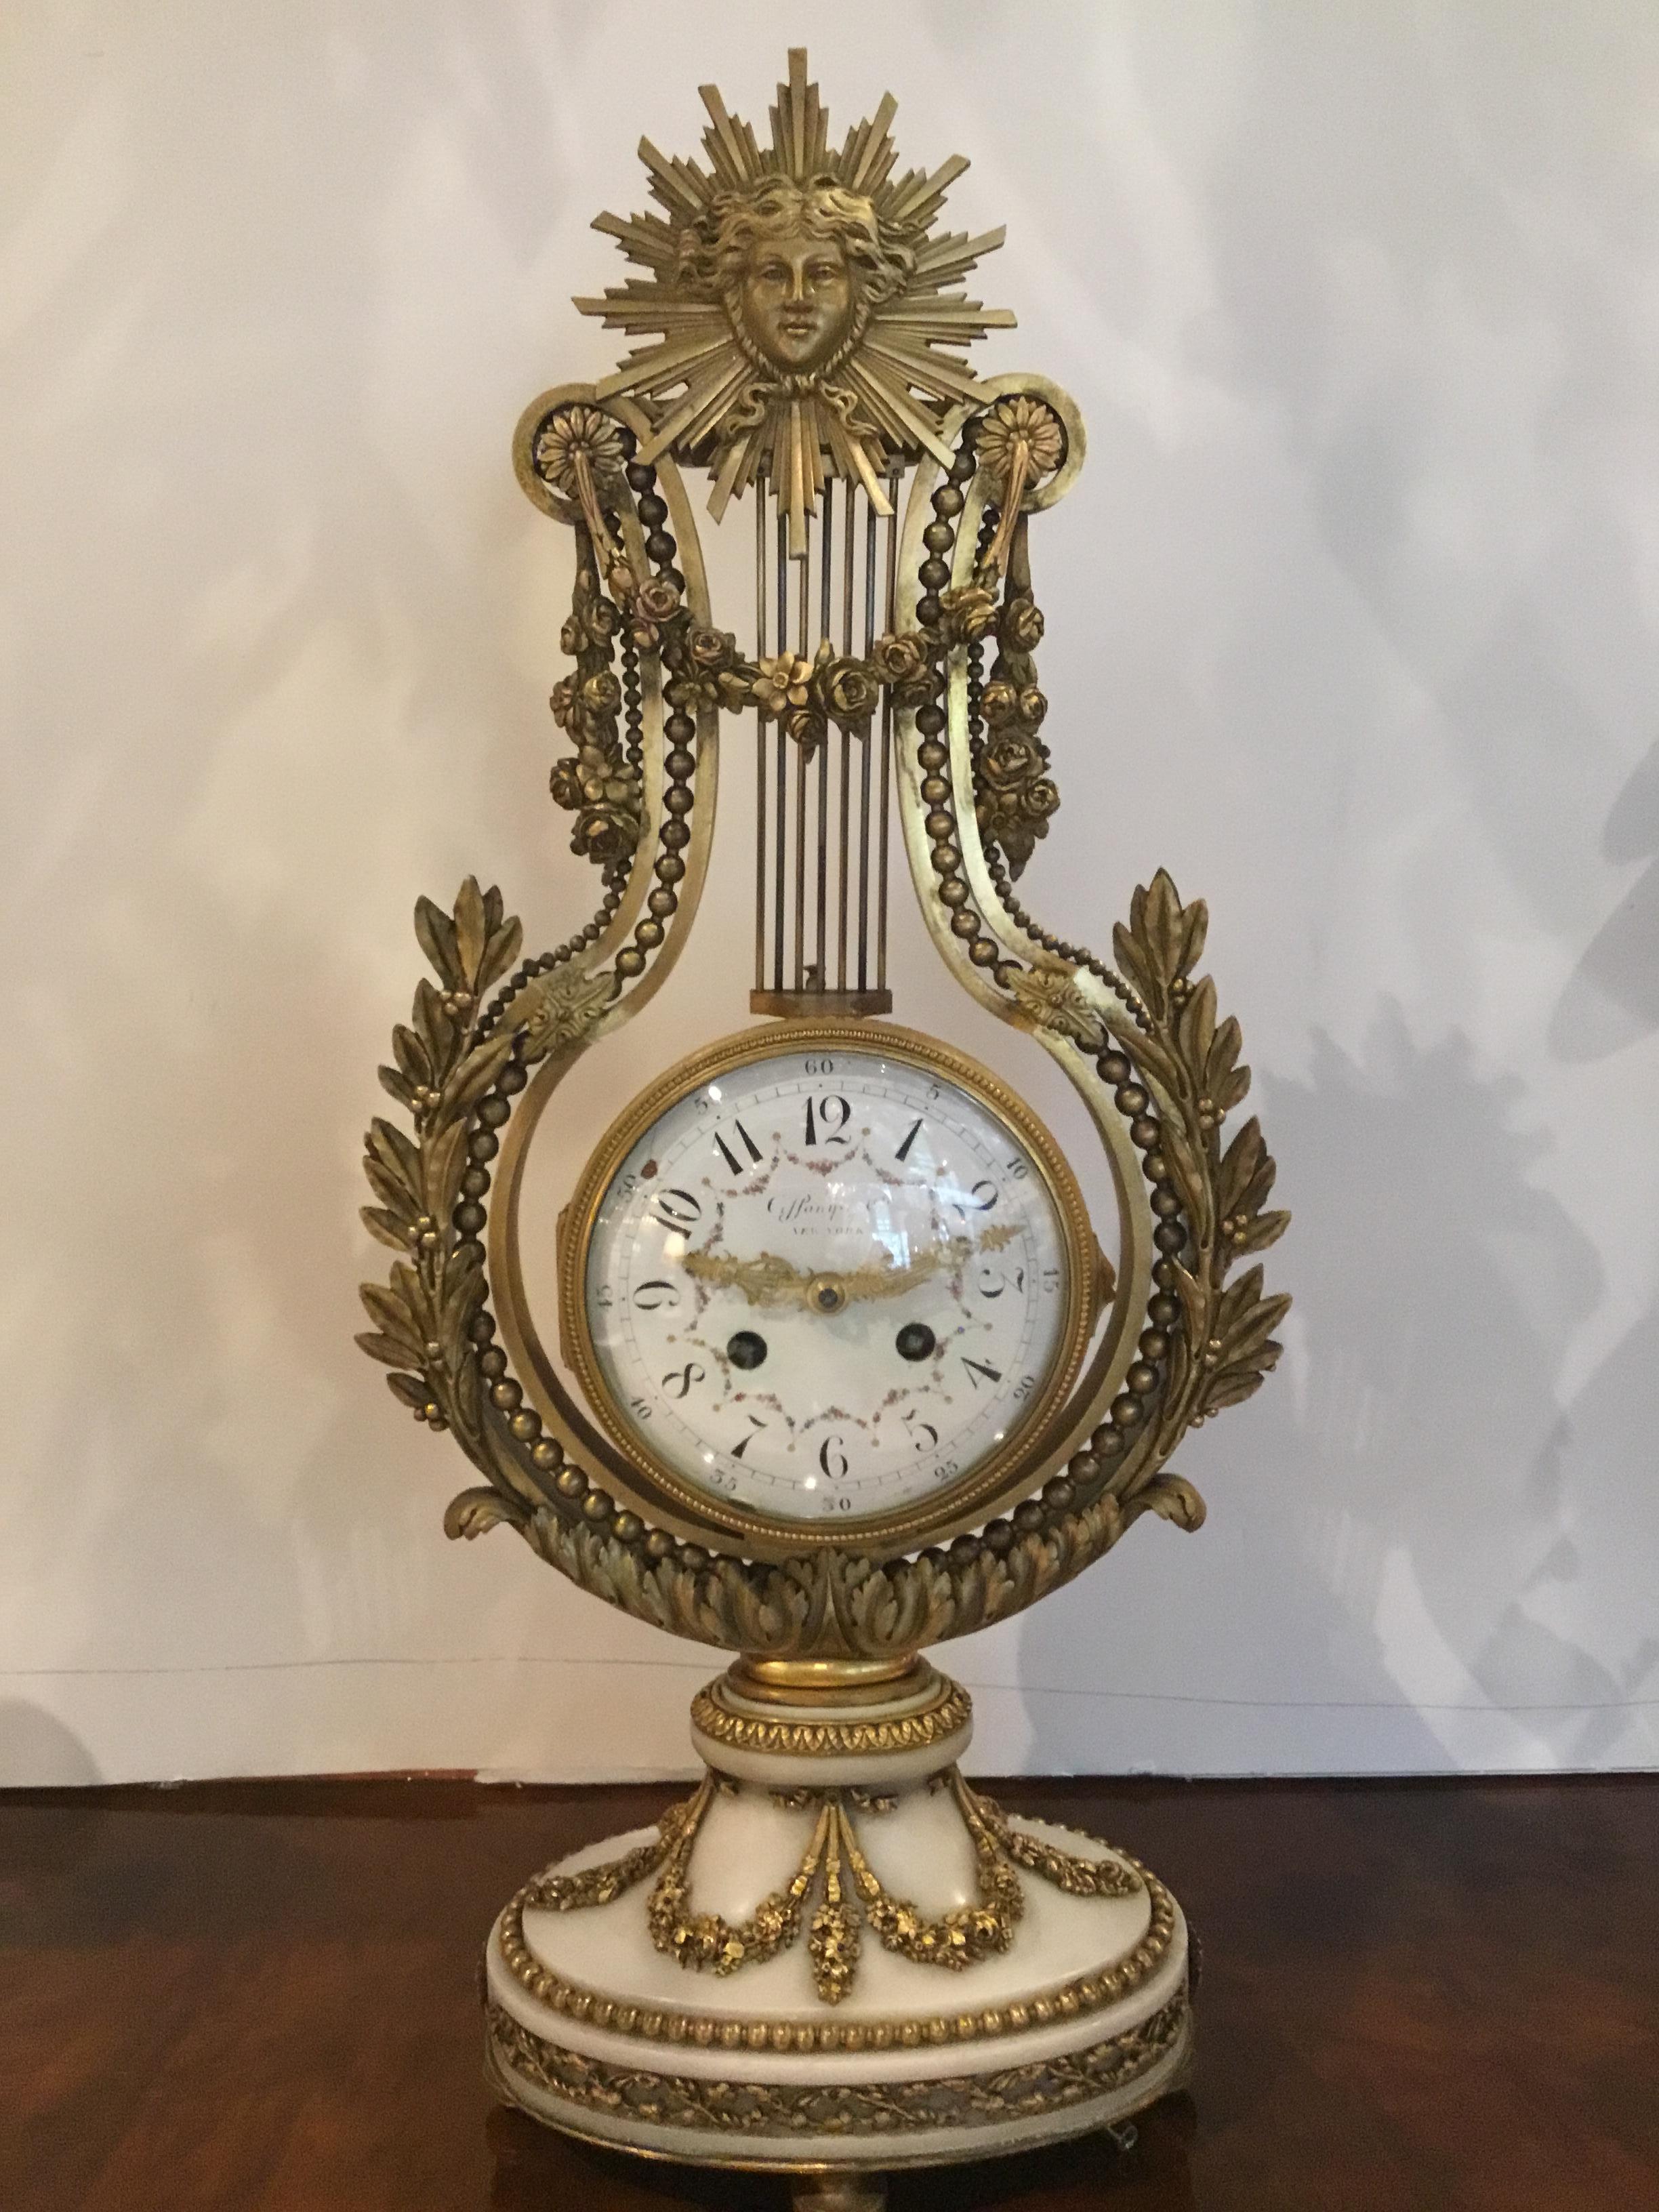 Garniture française en marbre blanc et bronze doré réalisée pour G J Payne
Co. New York, fabriqué par un horloger de Paris, 19e siècle. L'ensemble est composé de
Une horloge avec un masque en bronze doré drapé de guirlandes de festons. Un cadre en